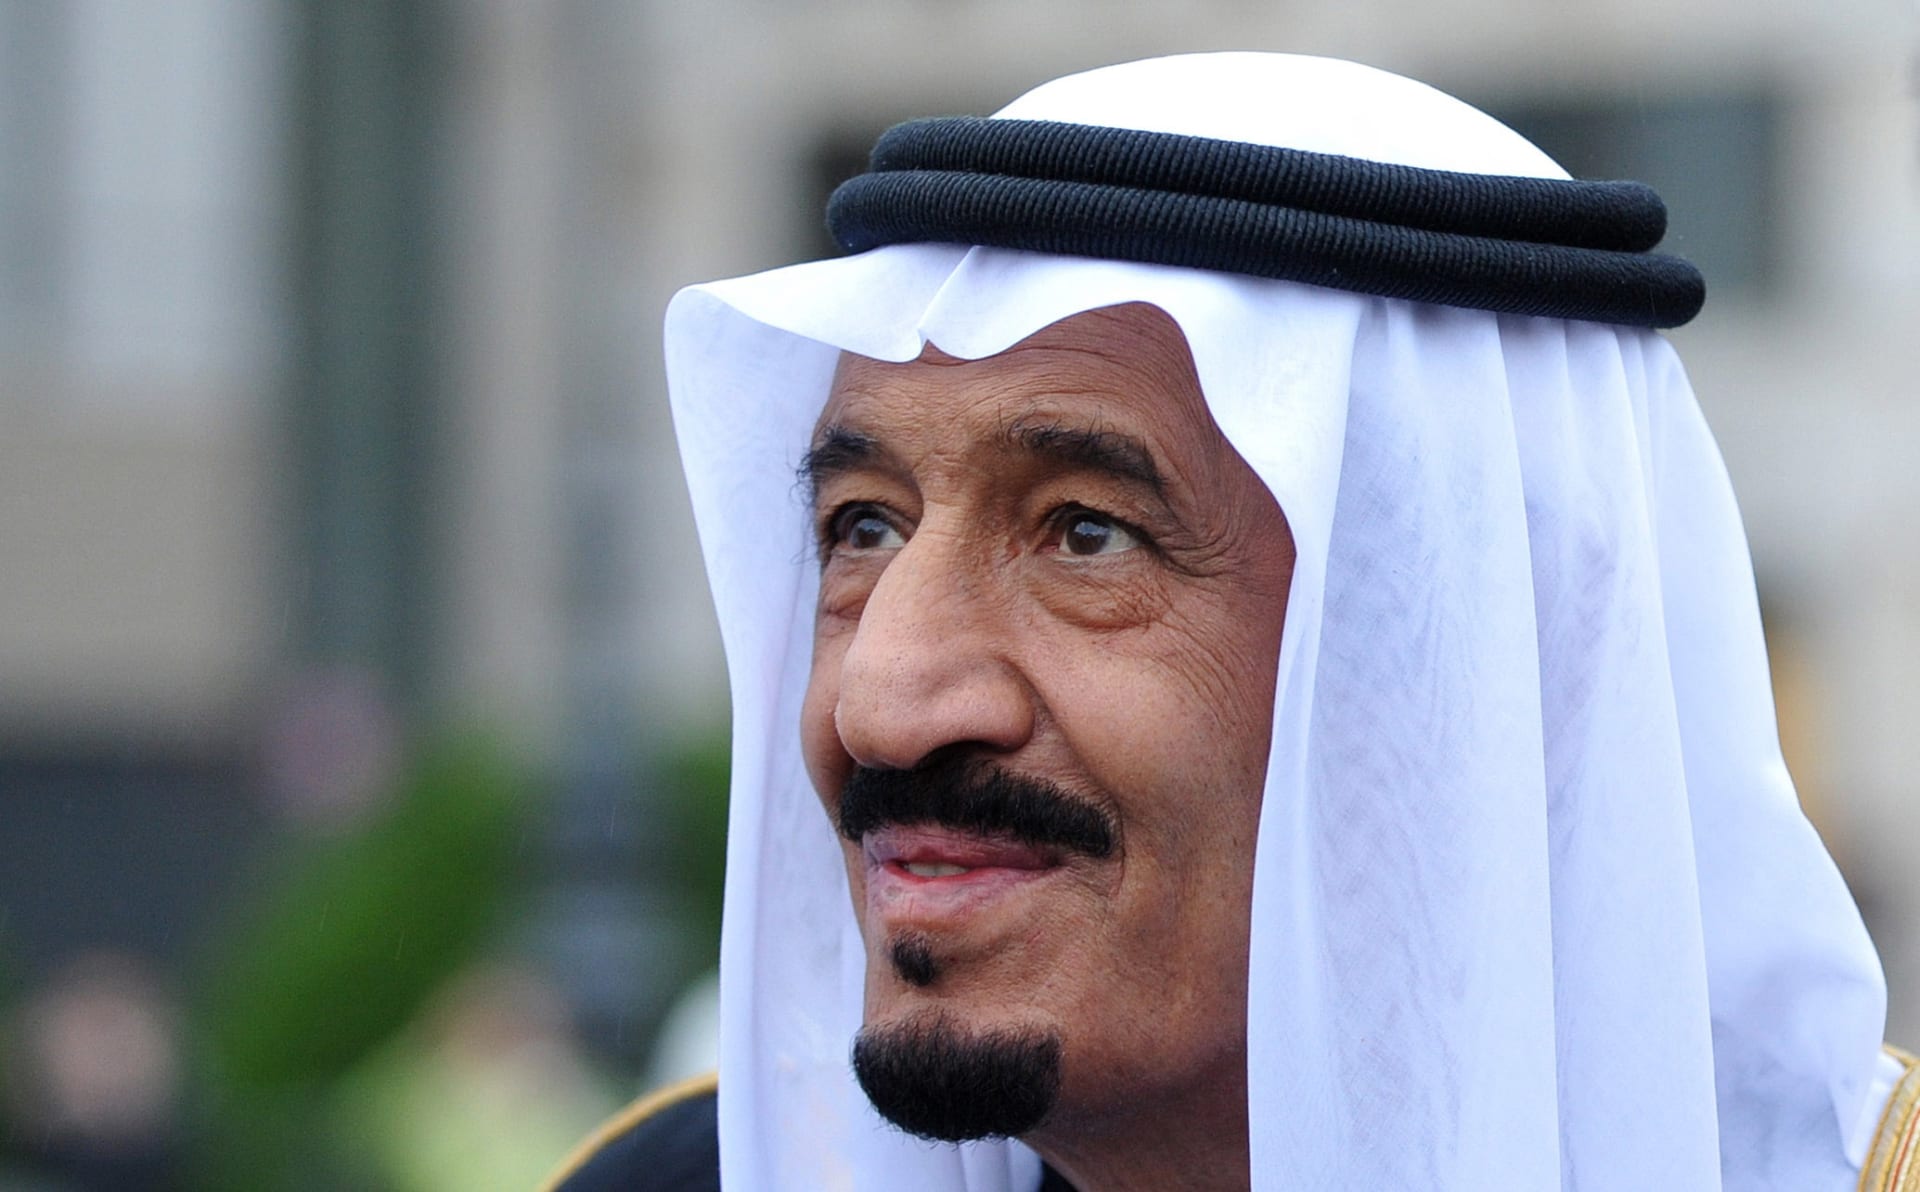 ملك السعودية في "اليوم الوطني": ذكرى تعبر عن الاعتزاز بأمجاد الوطن